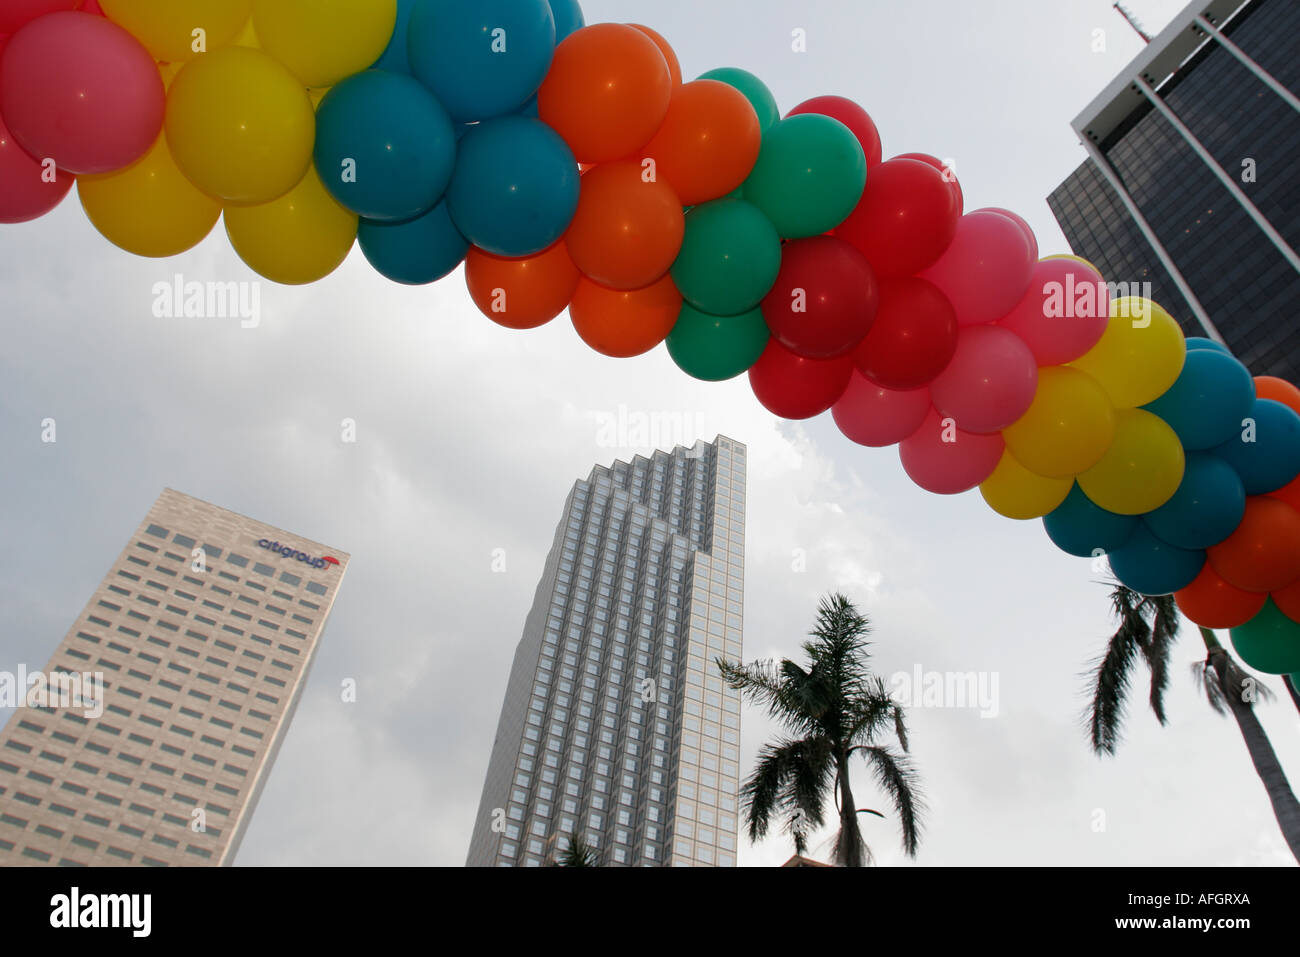 Miami Florida,Bayfront Park,ballons,immeubles de bureaux,horizon urbain paysage urbain,horizon urbain,paysage urbain,architecture,architecture,centre-ville,centre-ville ce Banque D'Images